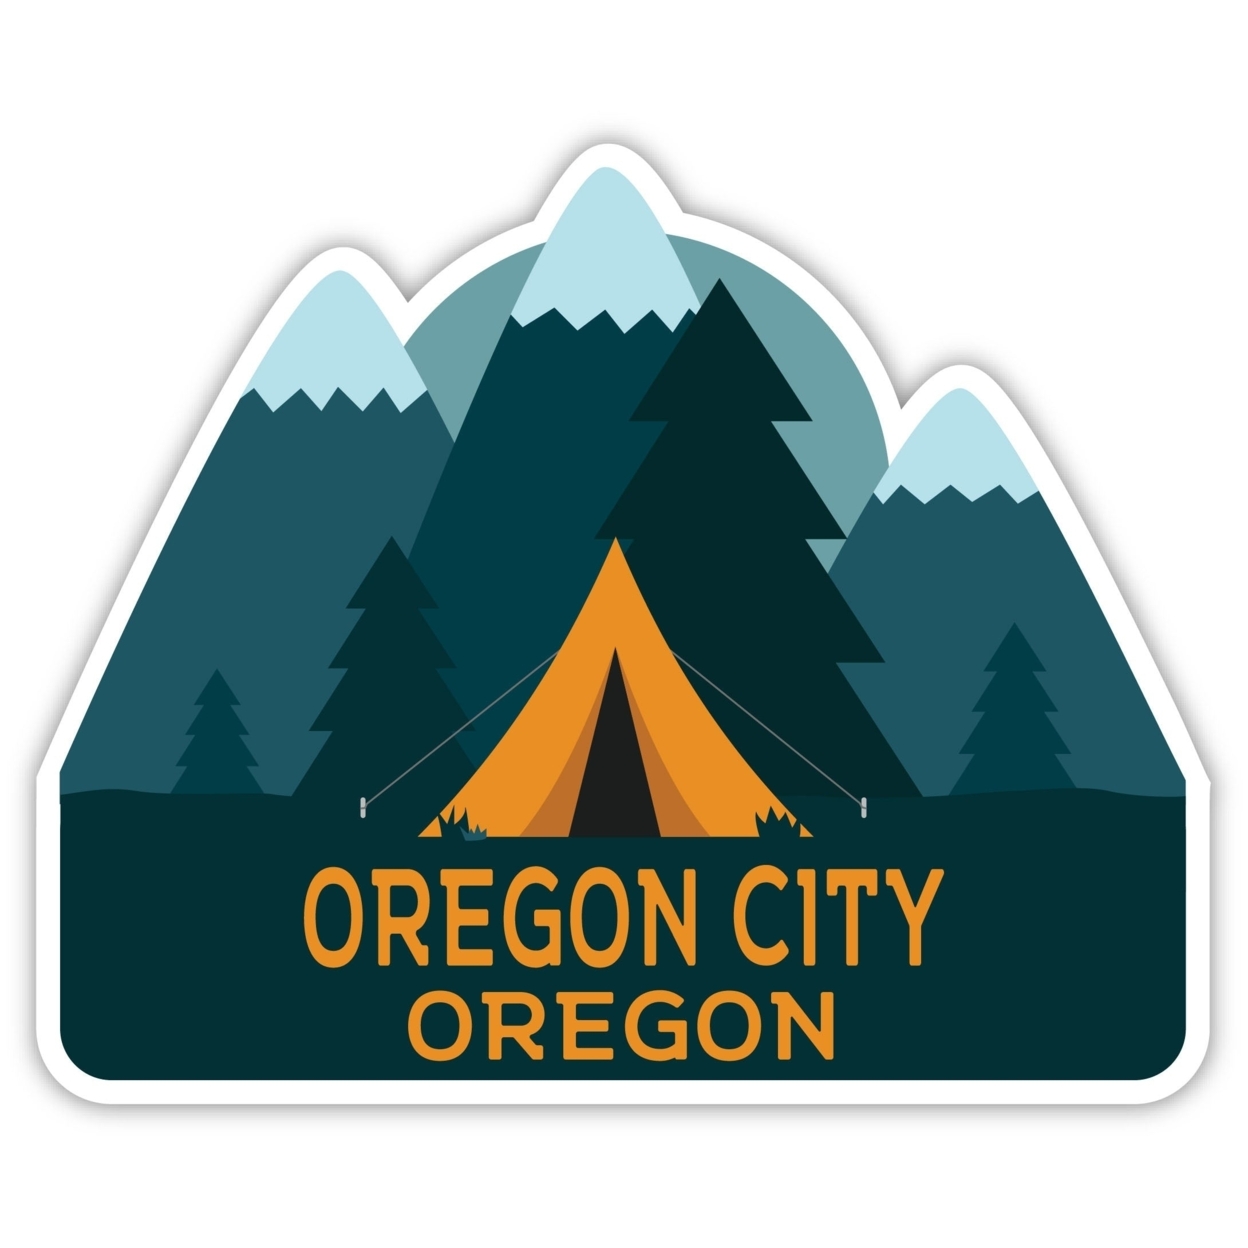 Oregon City Oregon Souvenir Decorative Stickers (Choose Theme And Size) - Single Unit, 2-Inch, Tent